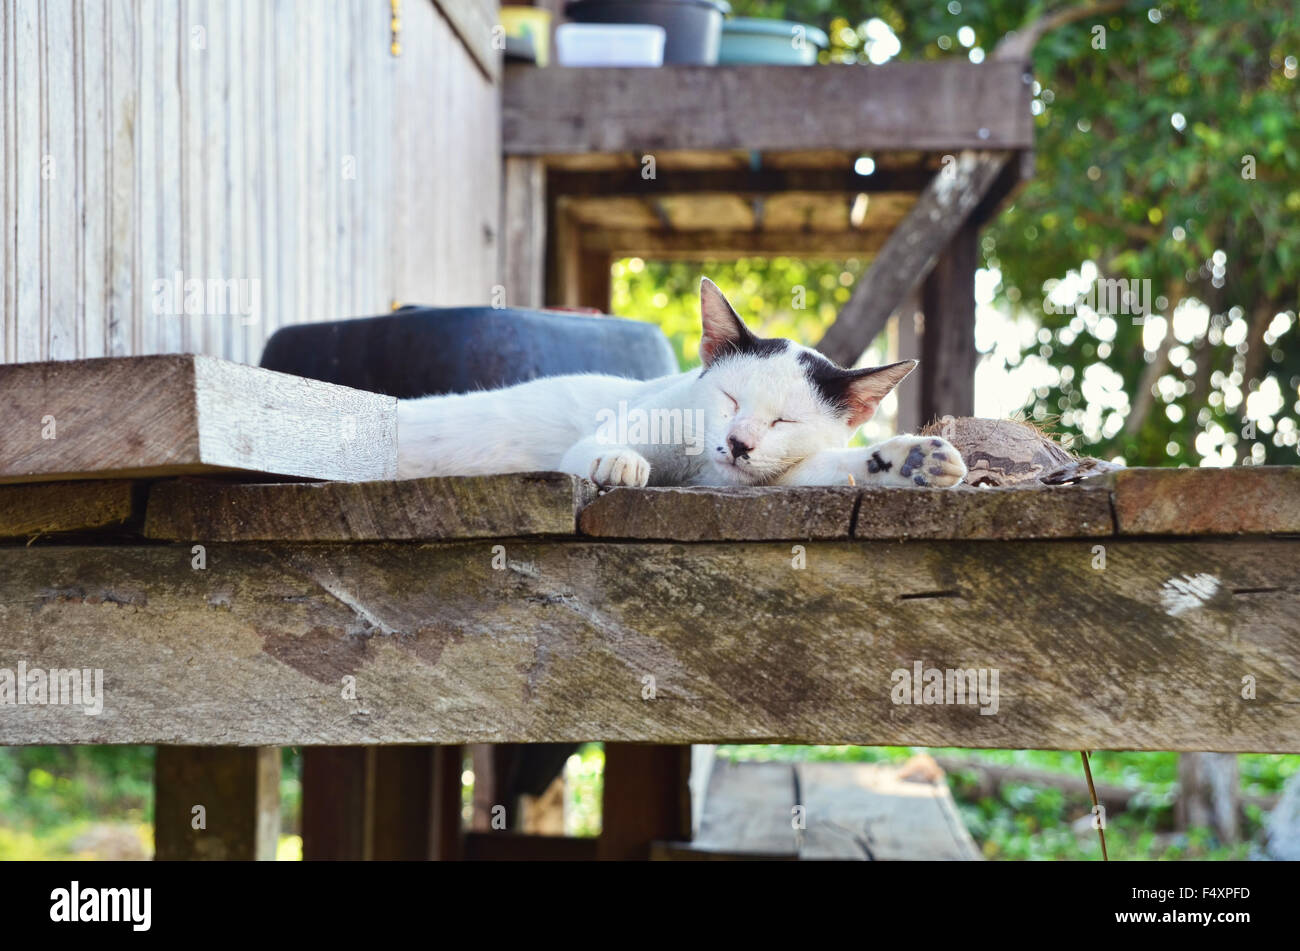 Sleeping cat on the stilt house Stock Photo